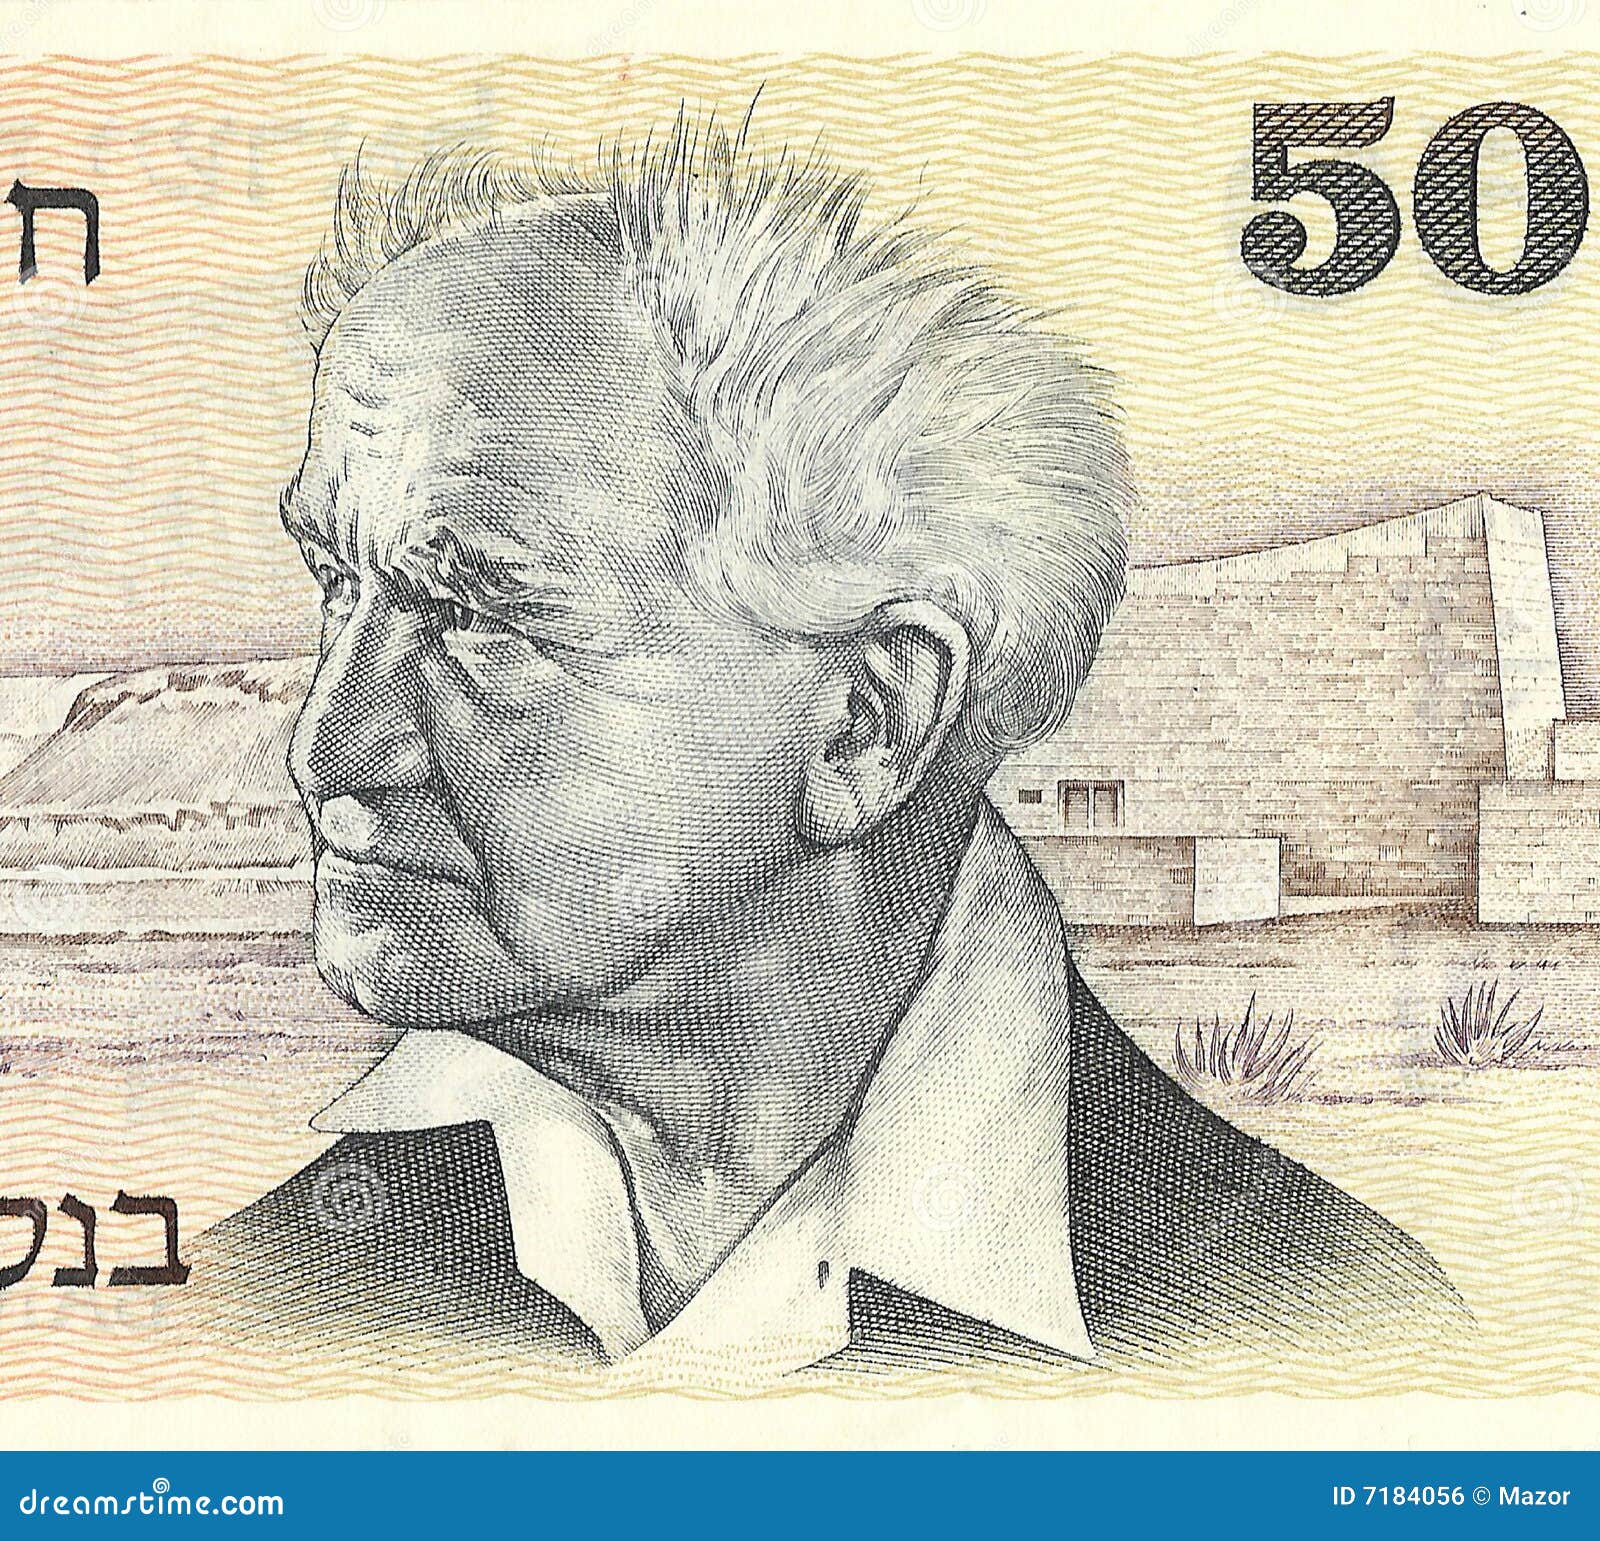 david ben-gurion, first prime minister of israel